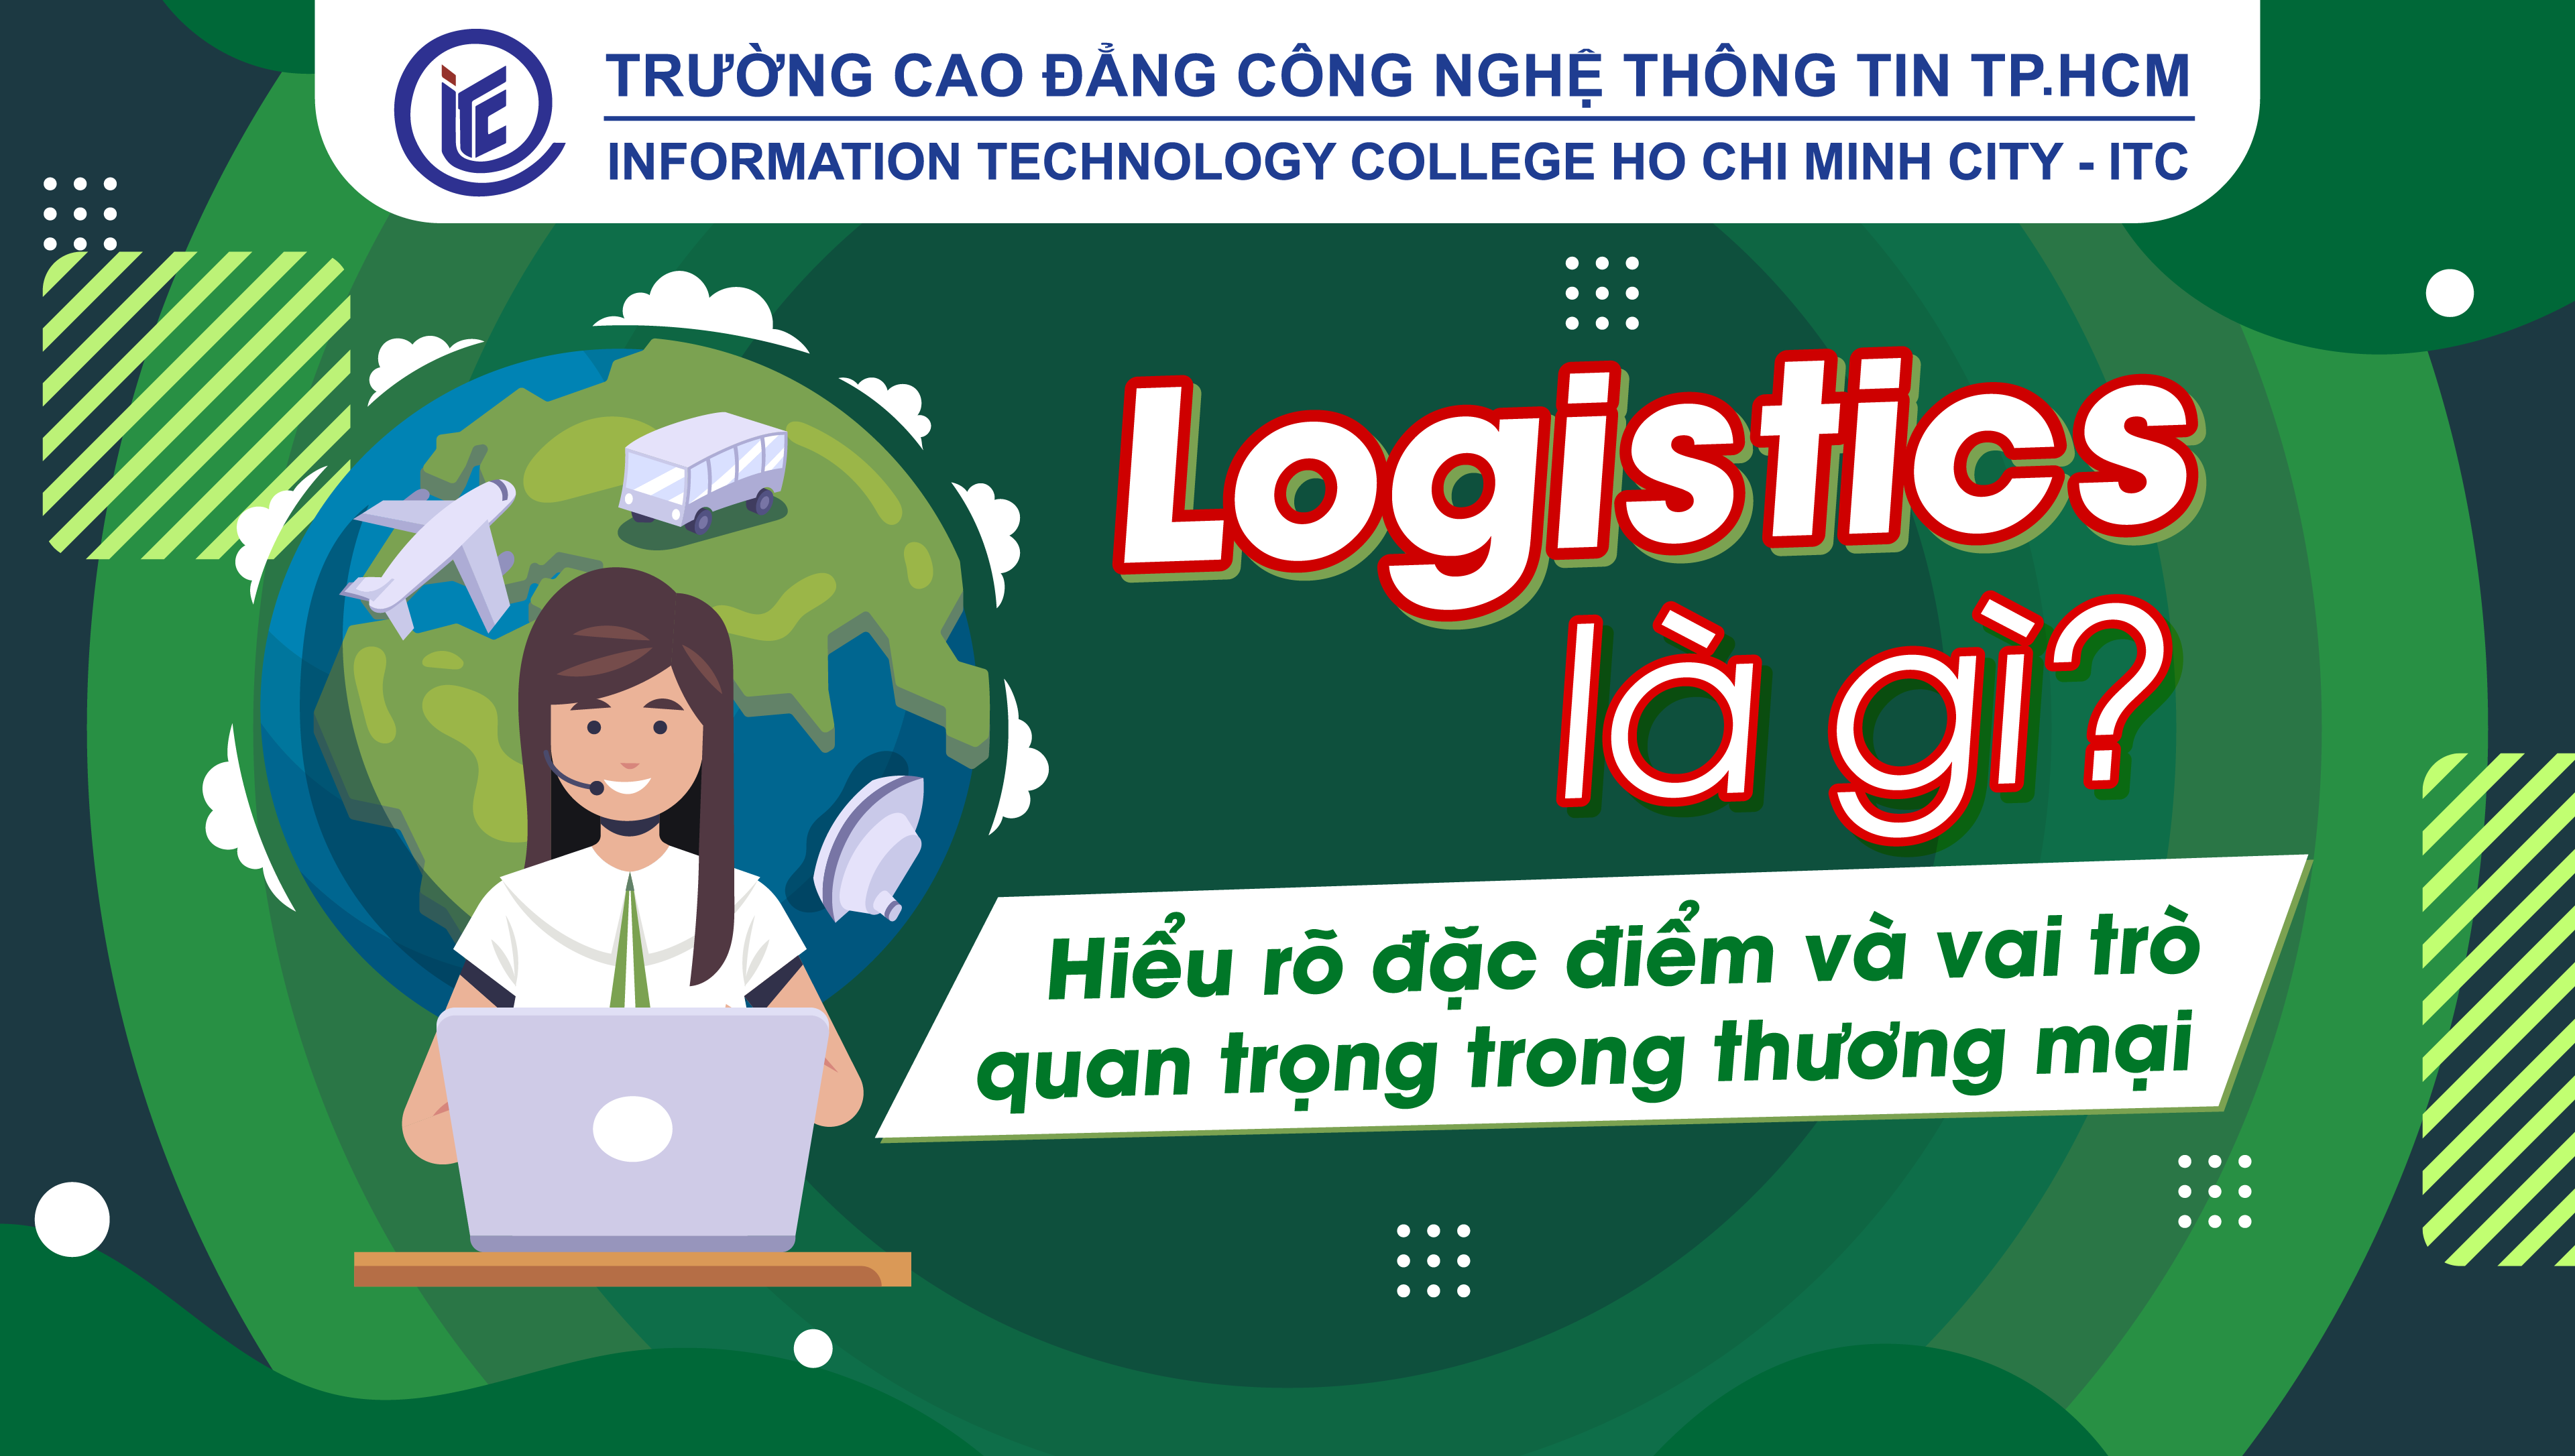 Logistics là gì? Hiểu rõ đặc điểm và vai trò quan trọng trong thương mại